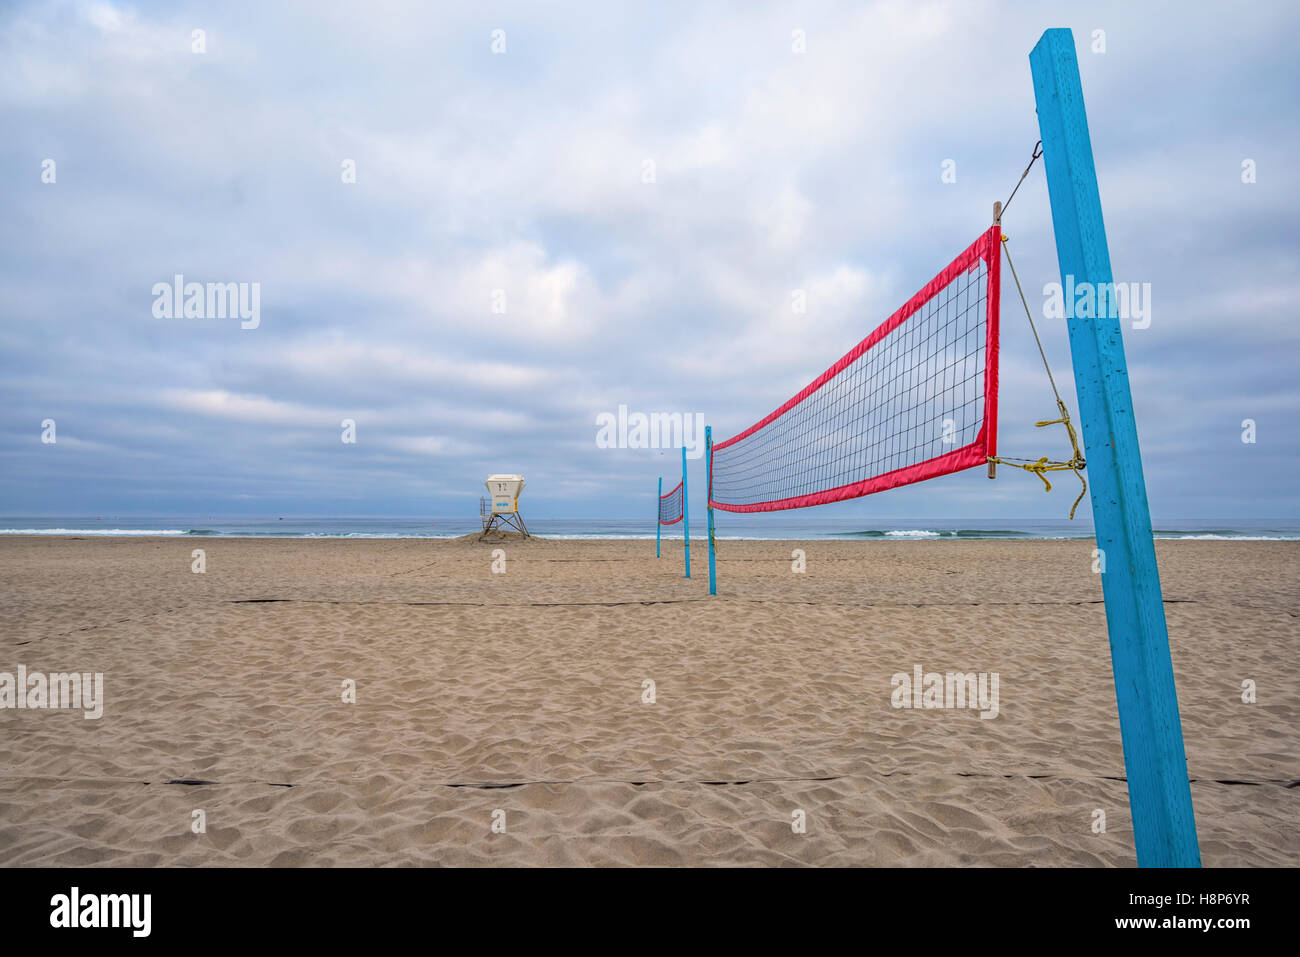 Filet de volley-ball de plage, lifeguard tower, nuageux le matin. Mission Beach, San Diego, Californie, USA. Banque D'Images